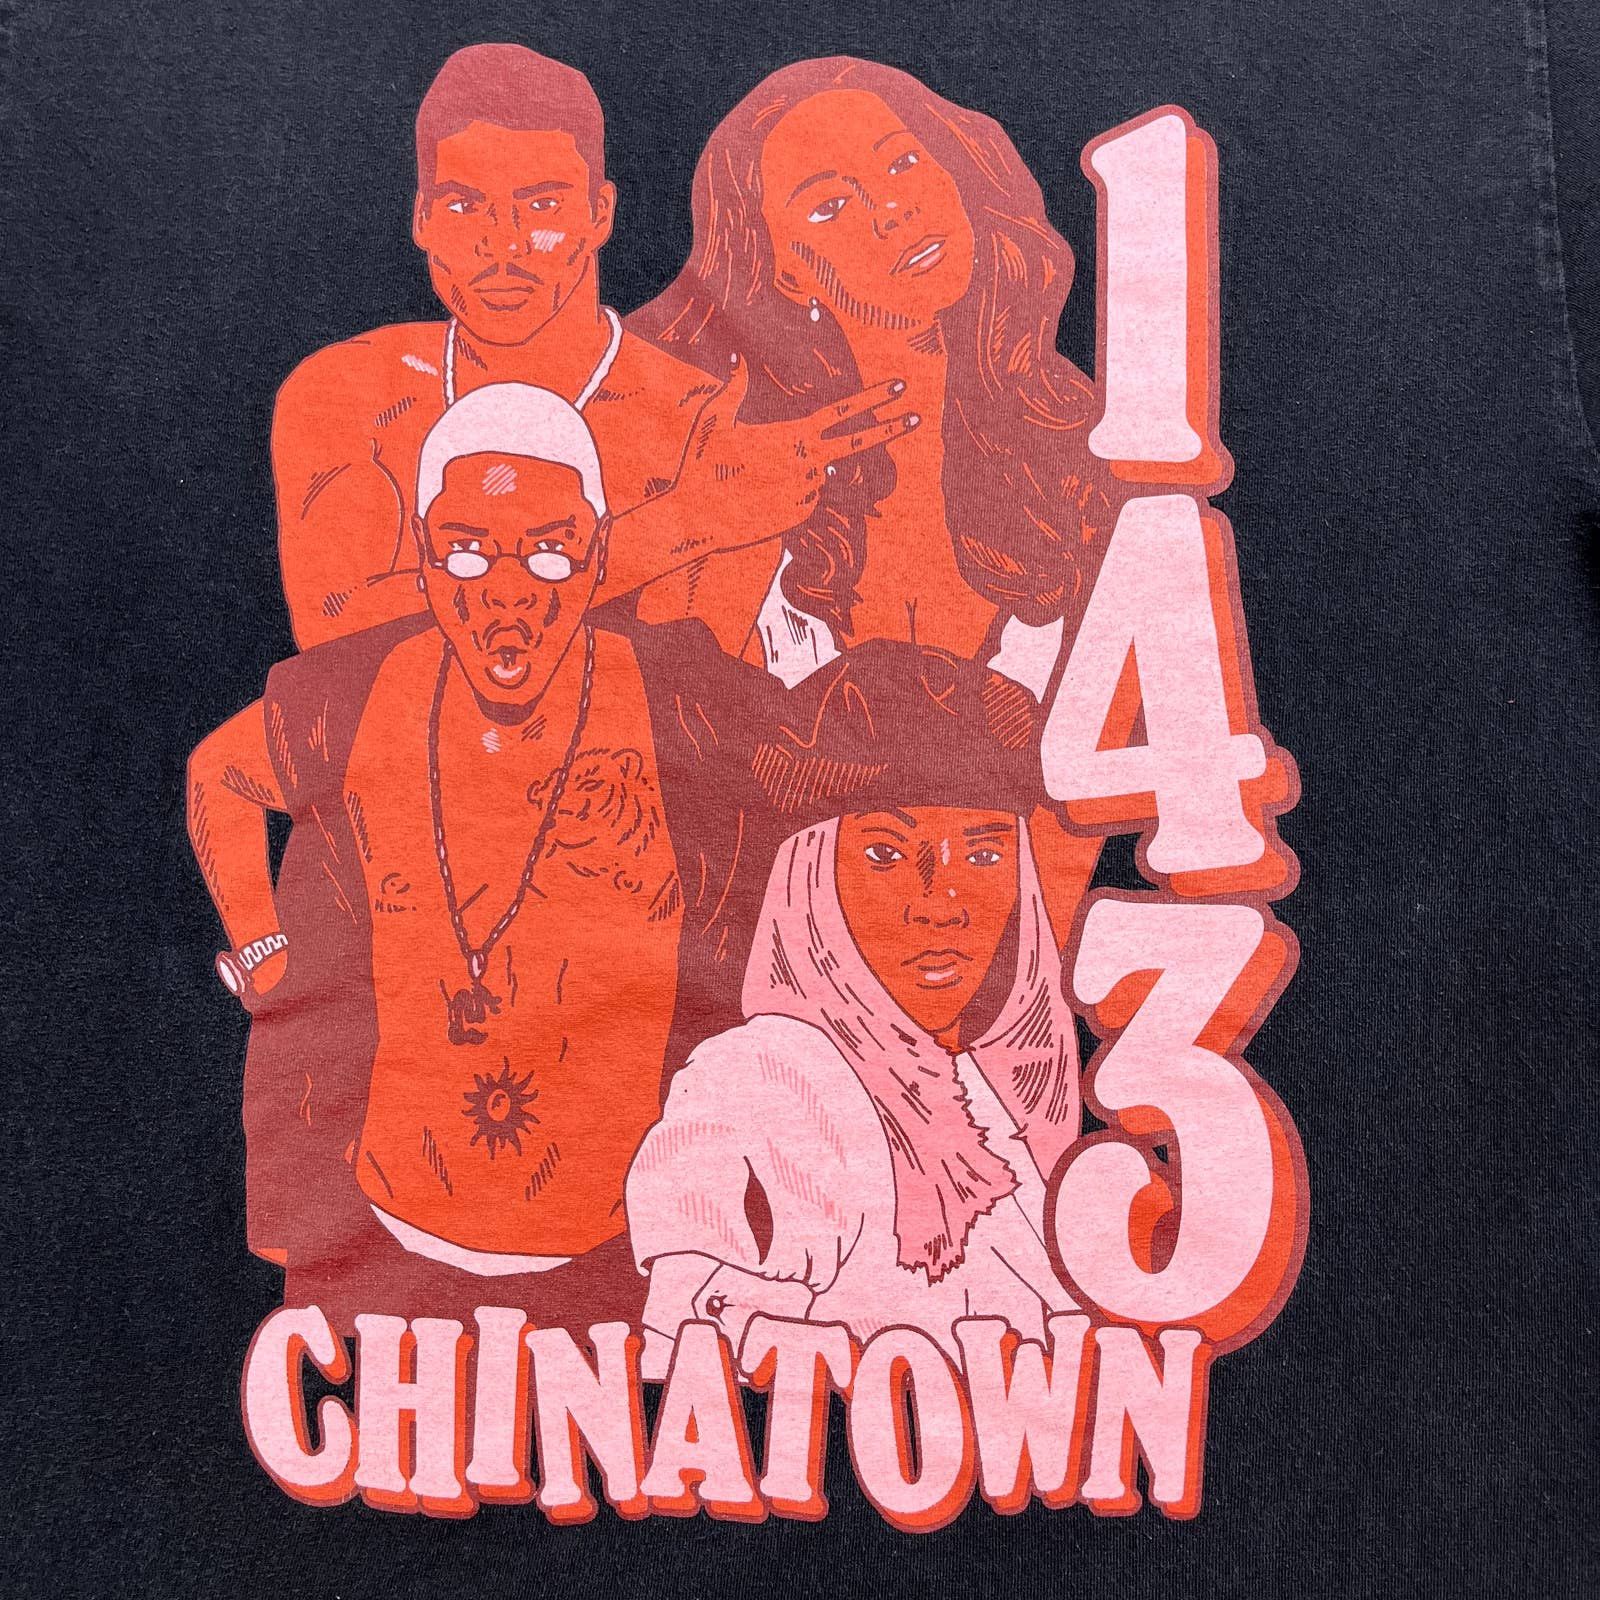 Market Chinatown Market T-Shirt Large Black 143 Artists Hip Hop Size US L / EU 52-54 / 3 - 2 Preview